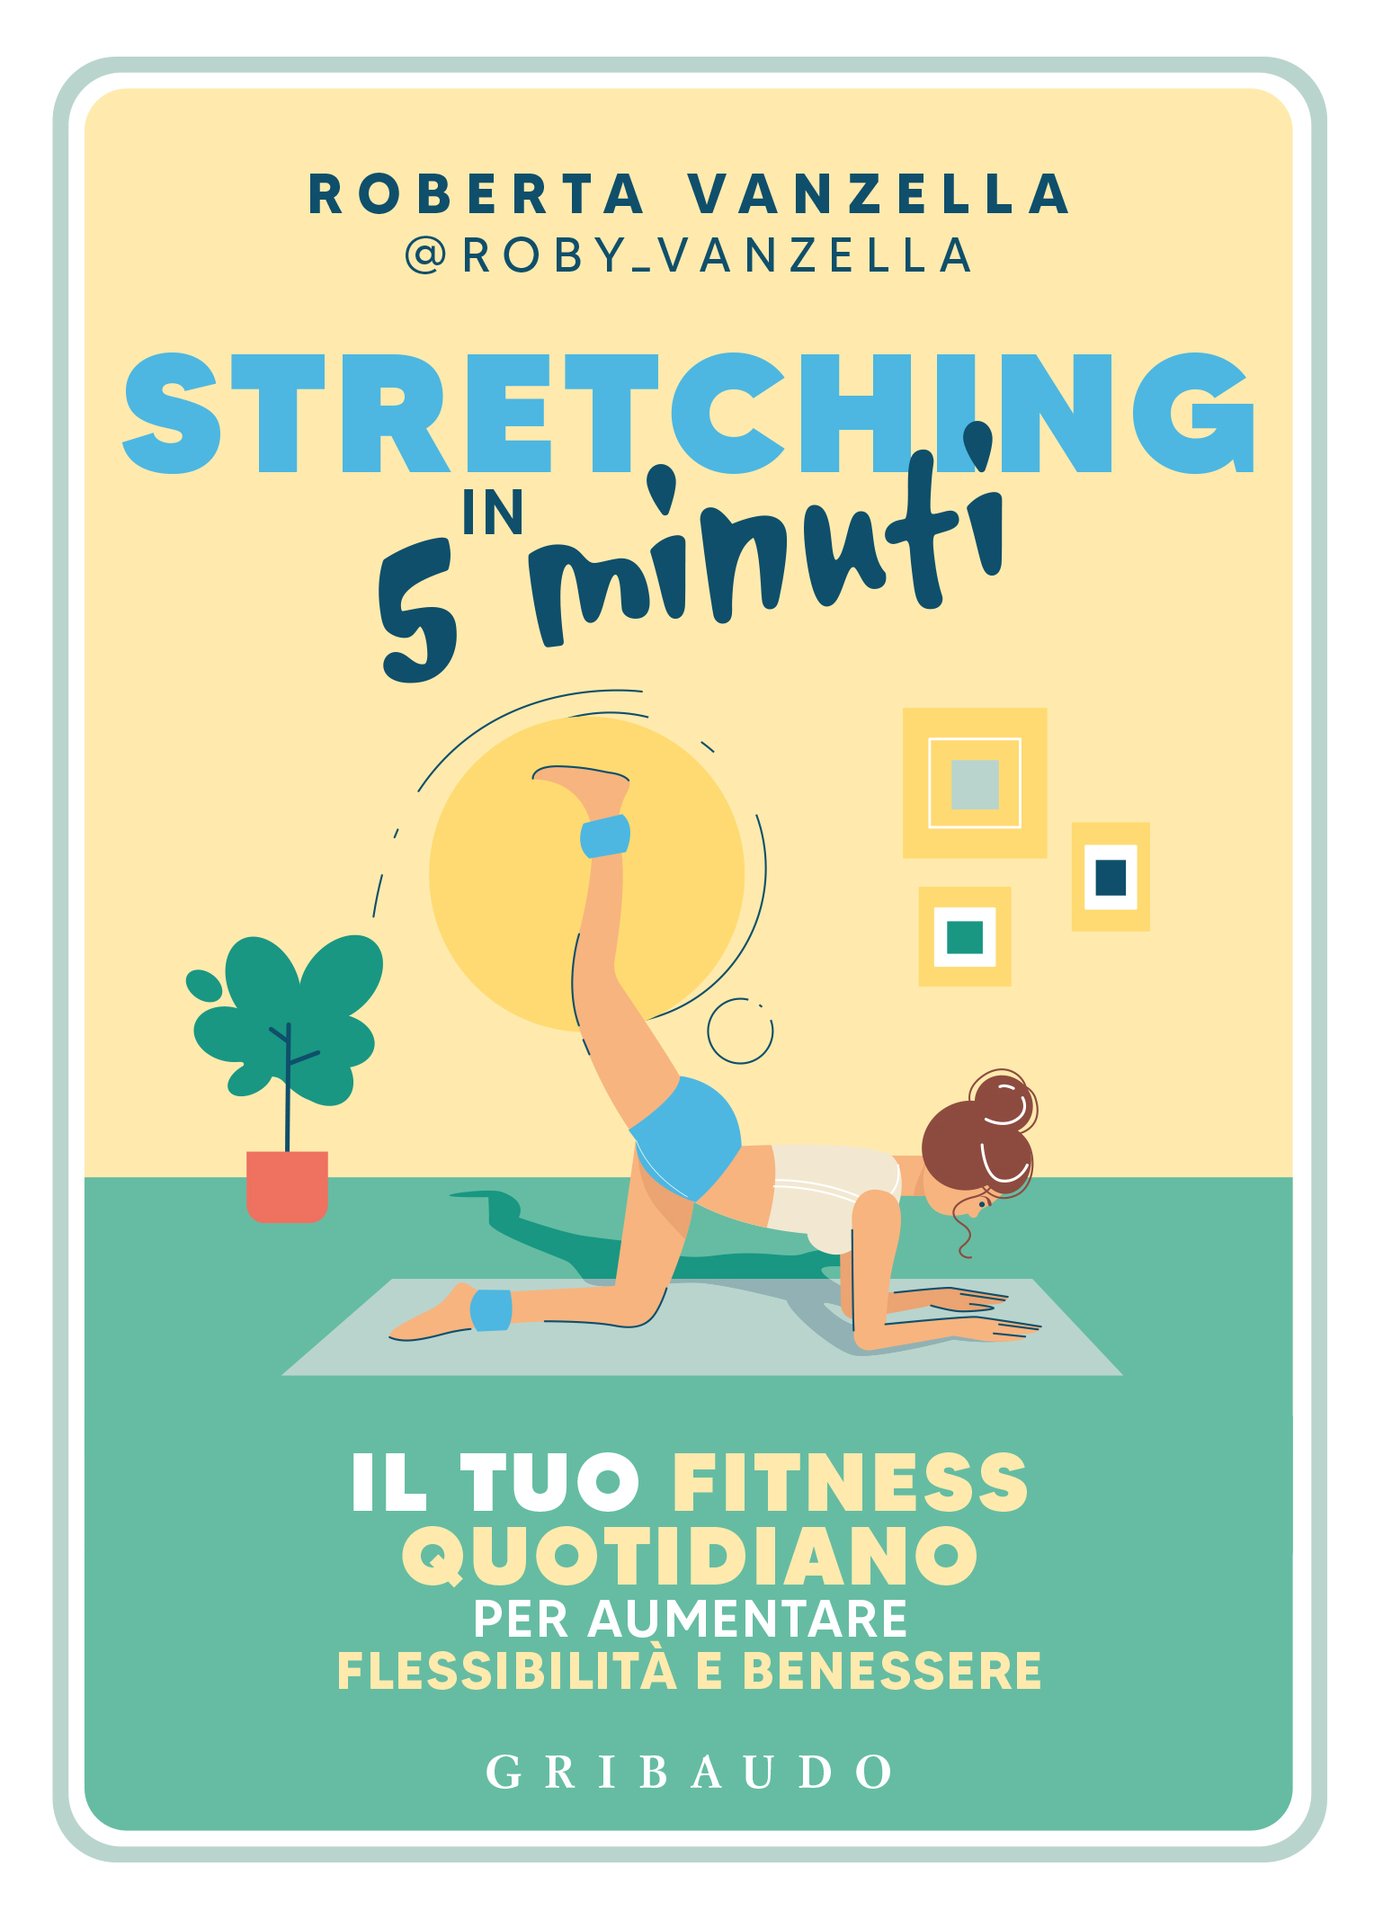 Stretching in 5 minuti